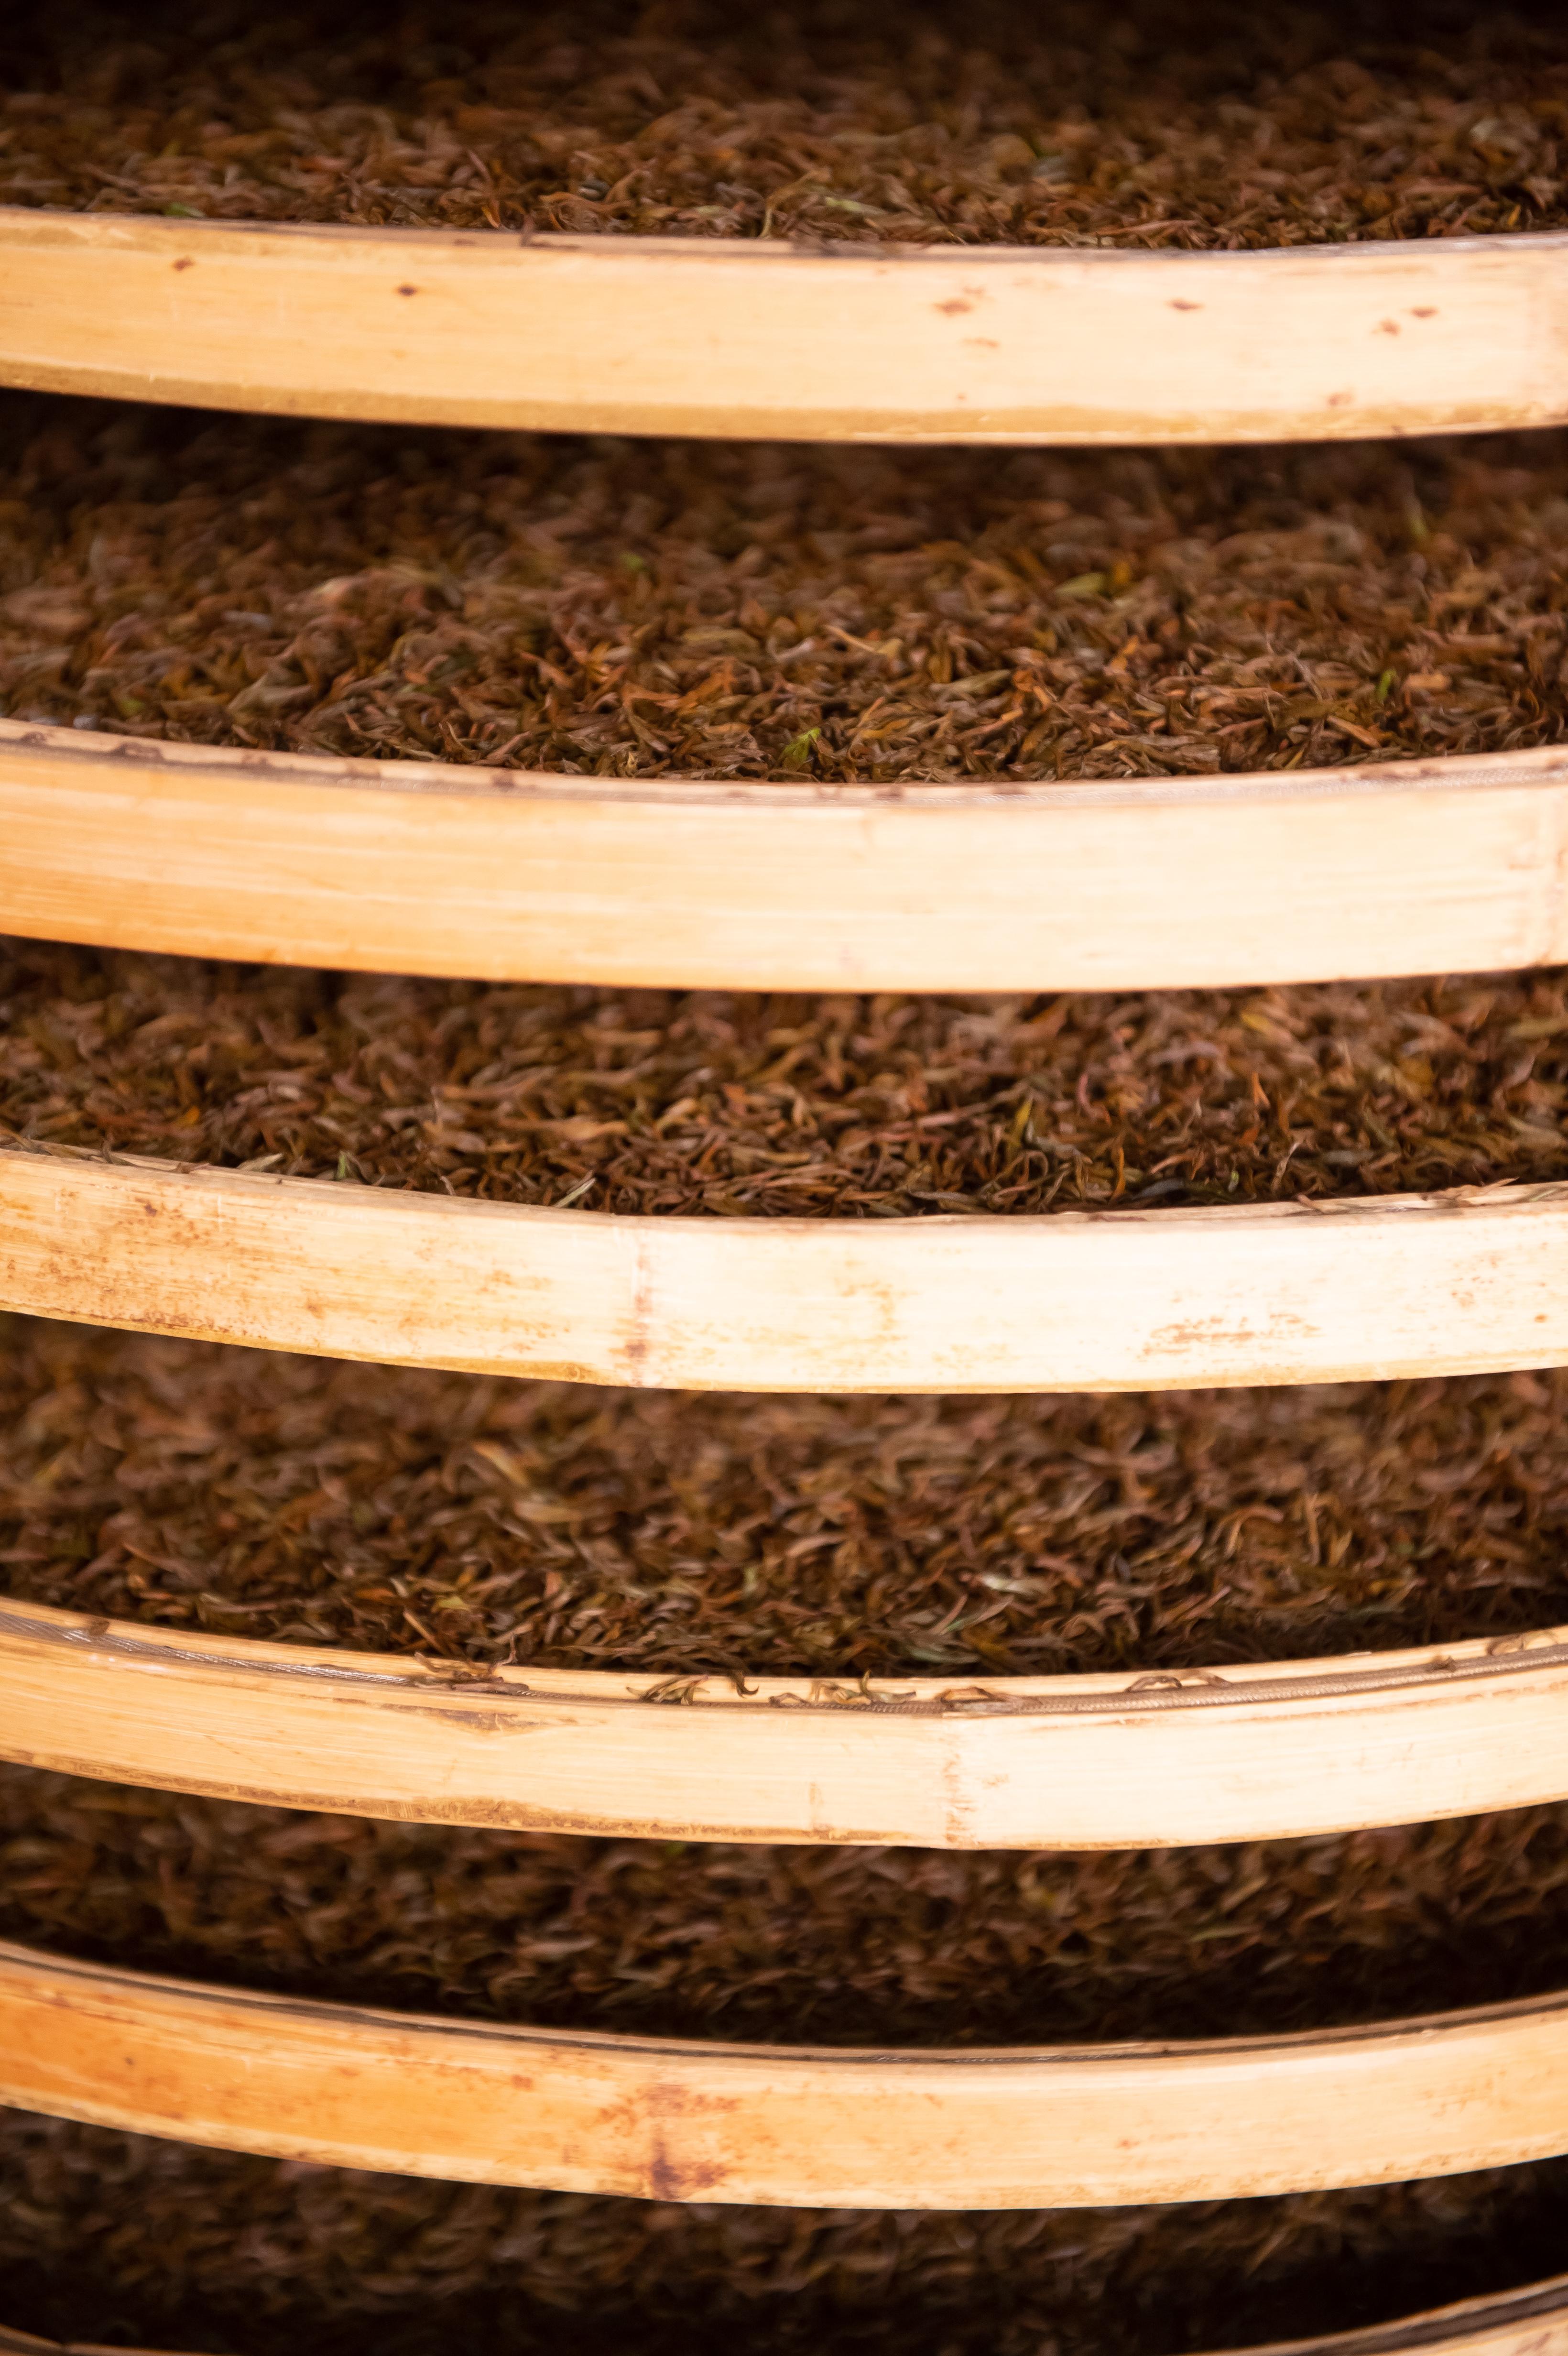 红碎茶和小种红茶,其制法大同小异,都有萎凋,揉捻,发酵,干燥四个工序